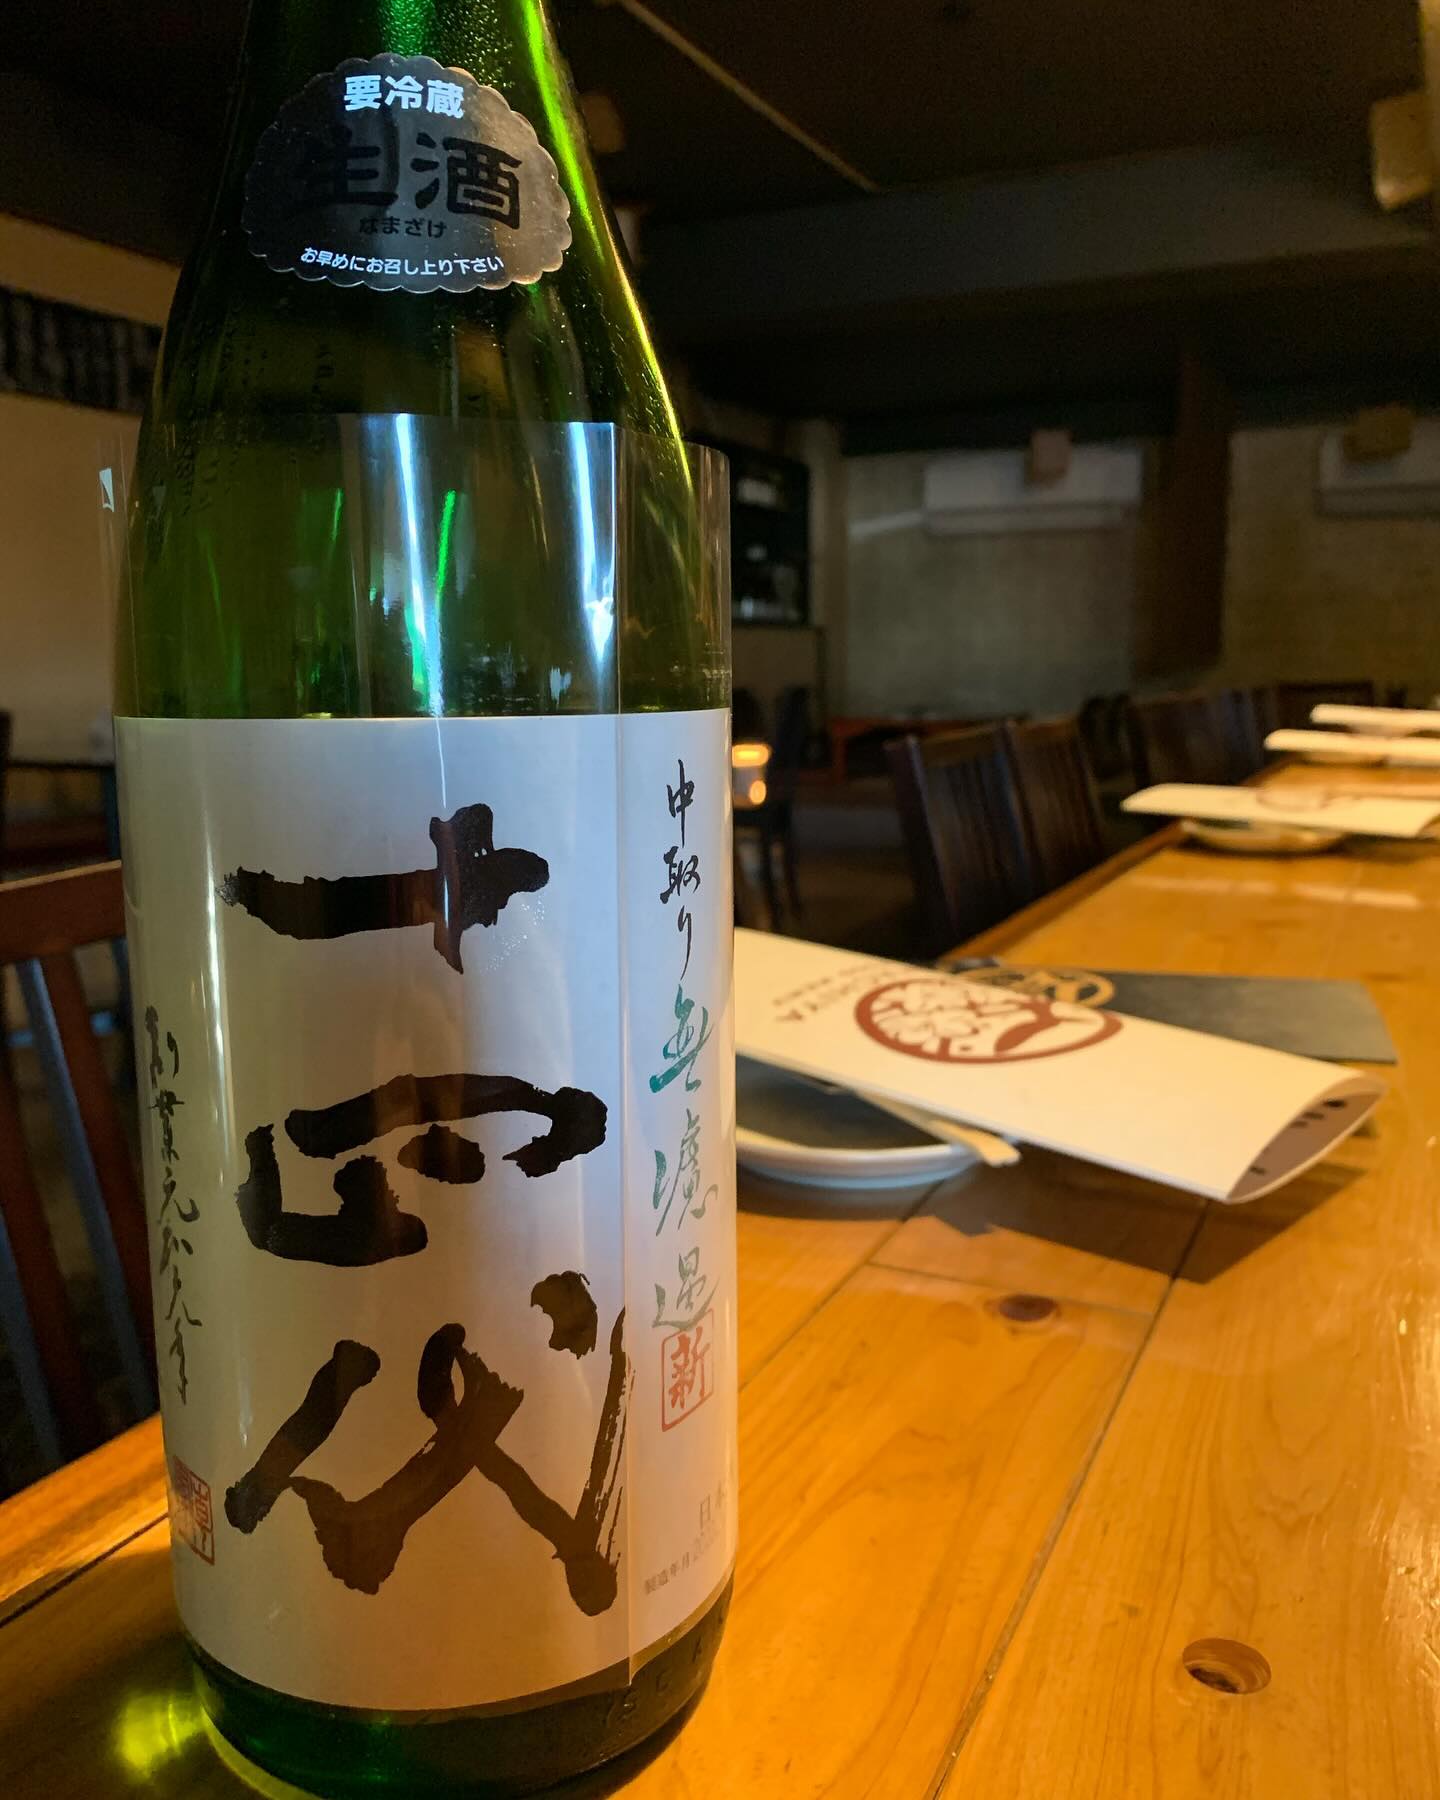 インスタ限定隠し酒
｢十四代｣入荷しました️
日本酒のメニューには乗っけてないのでぜひ
1度でちゃうとすぐ無くなってしまうのでお早めに
 #